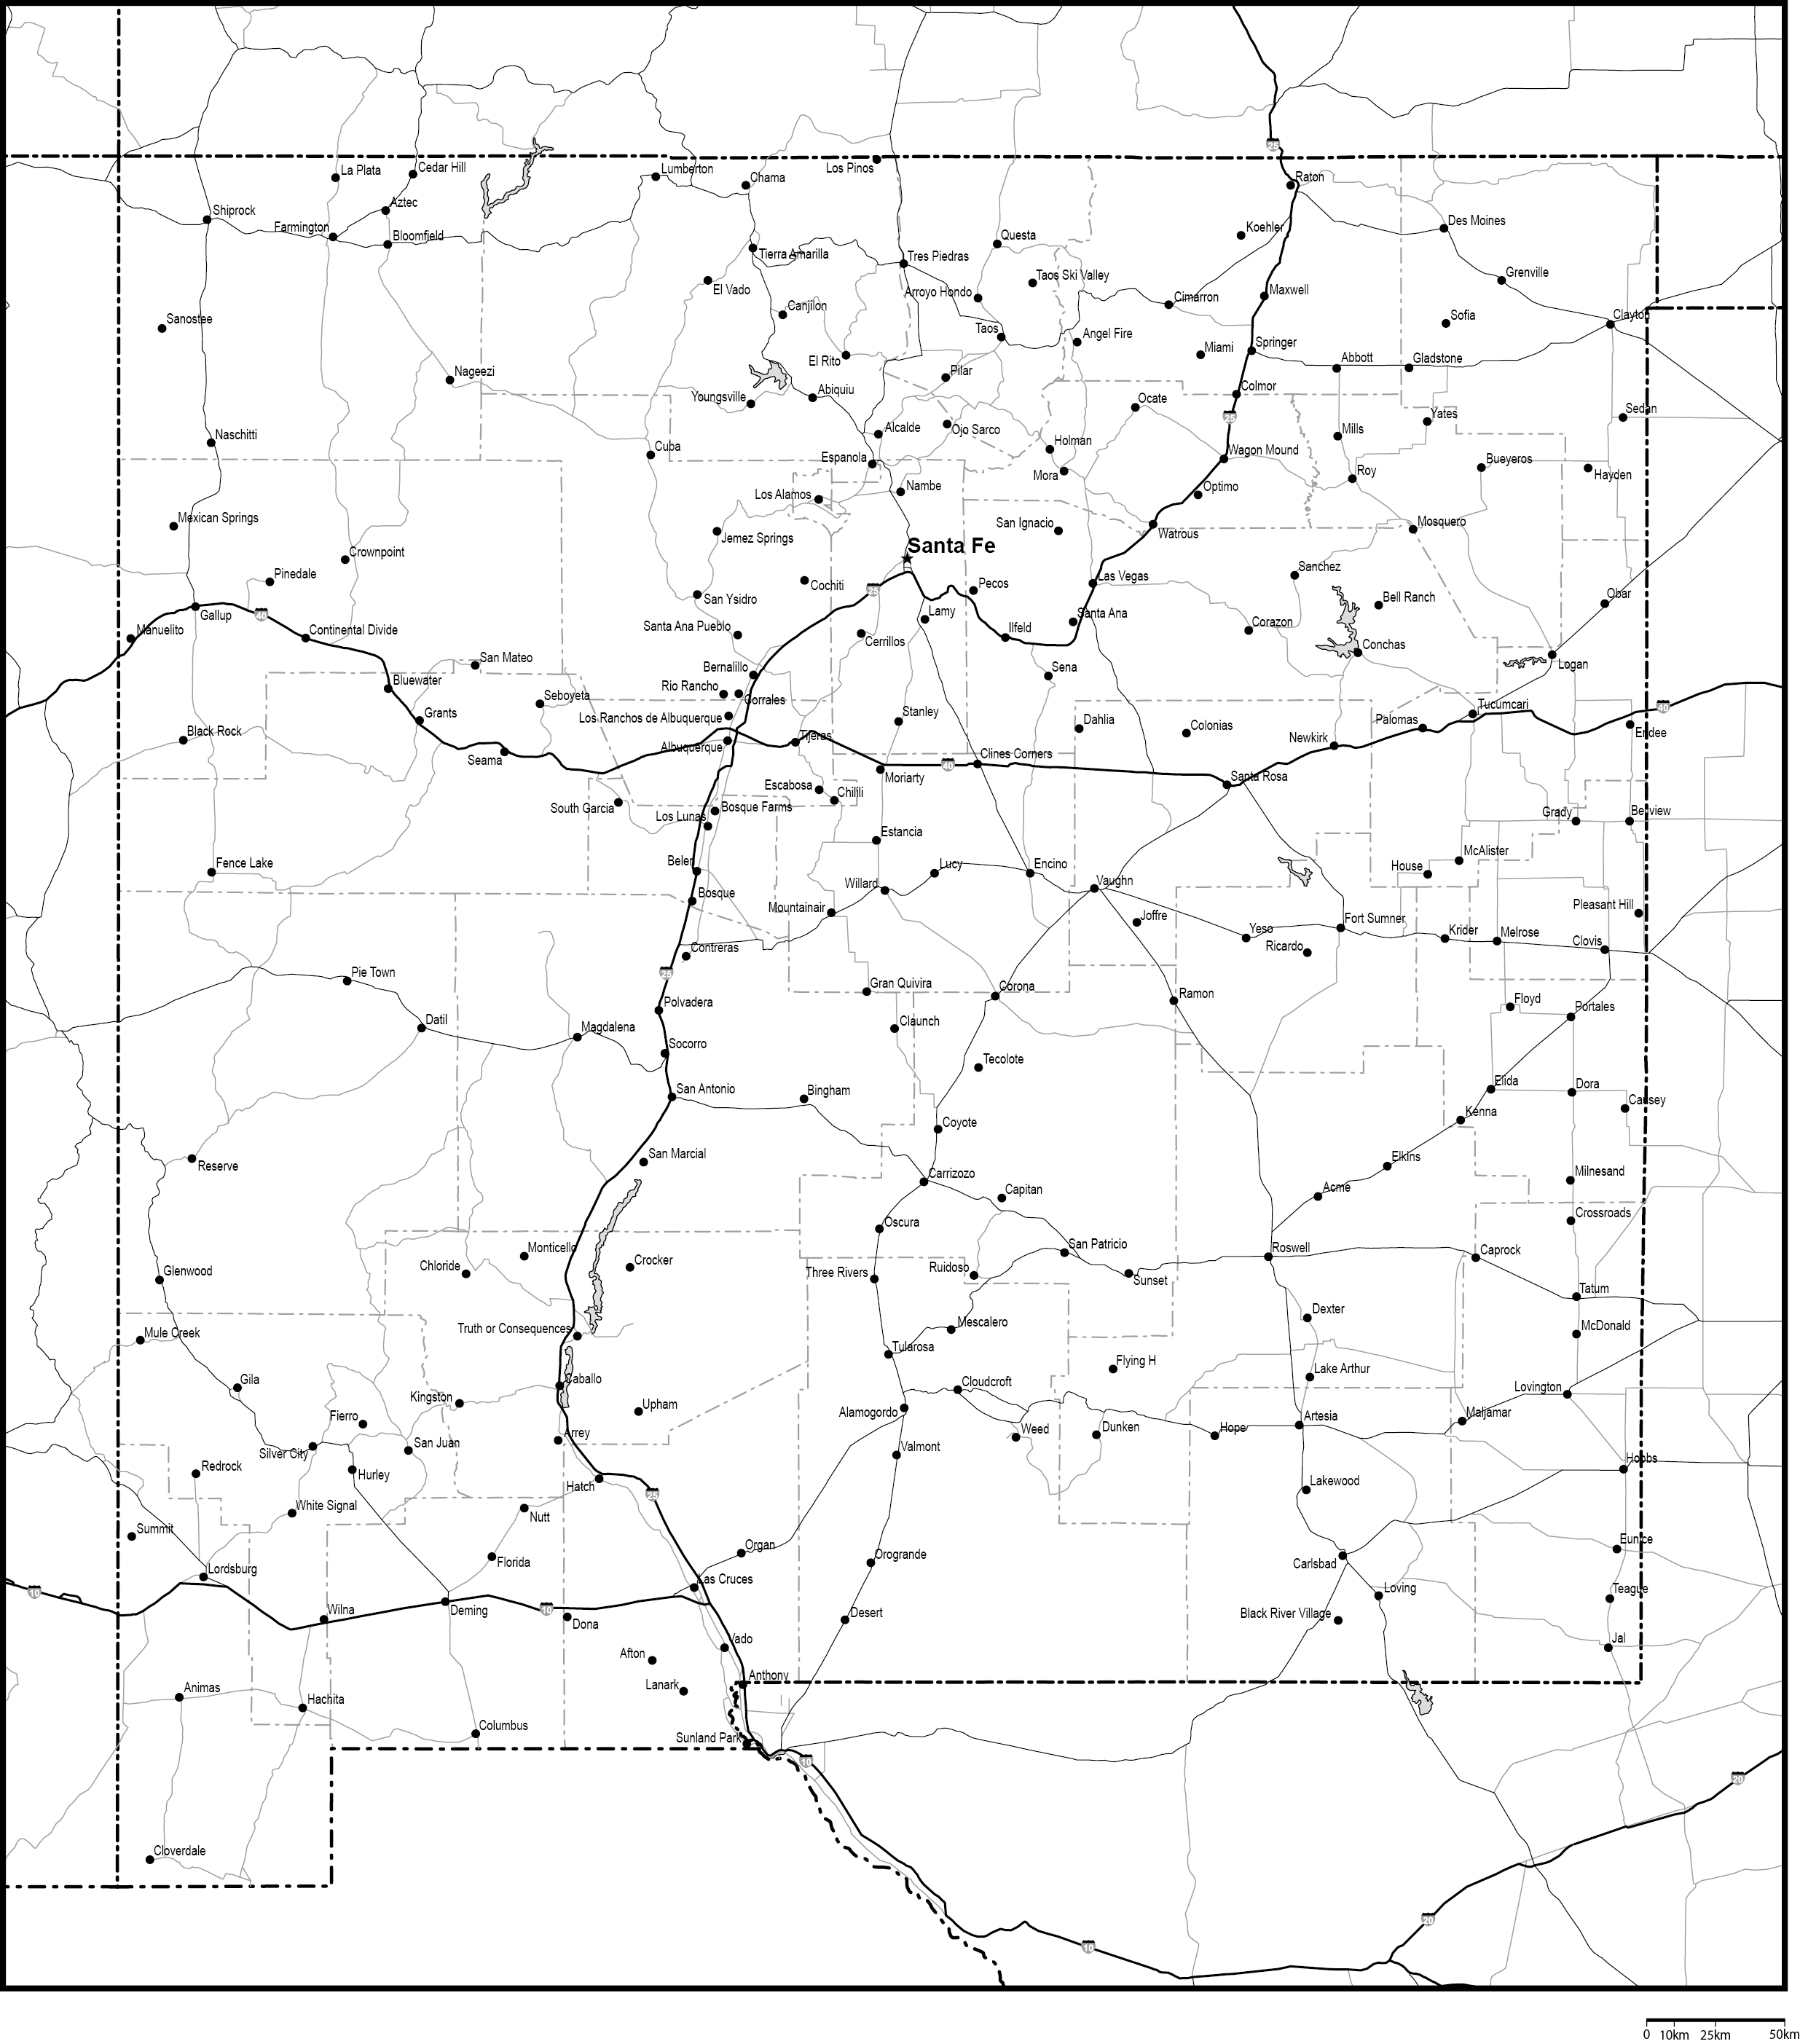 ニューメキシコ州郡分け白地図州都・主な都市・道路あり(英語)フリーデータの画像